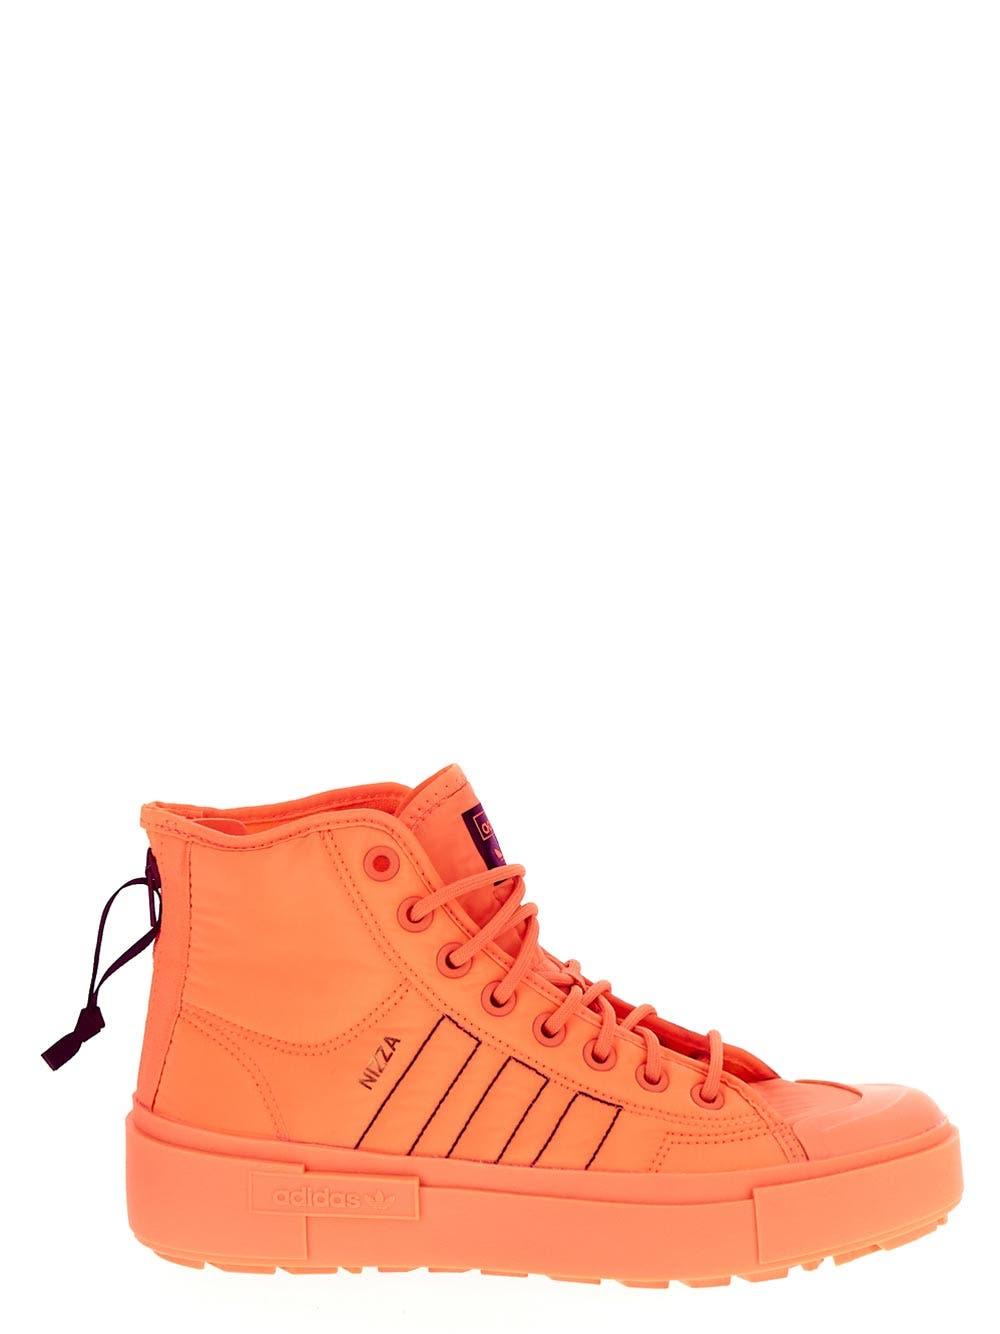 adidas Originals Nizza Bonega X Orange Lyst in Shoes 